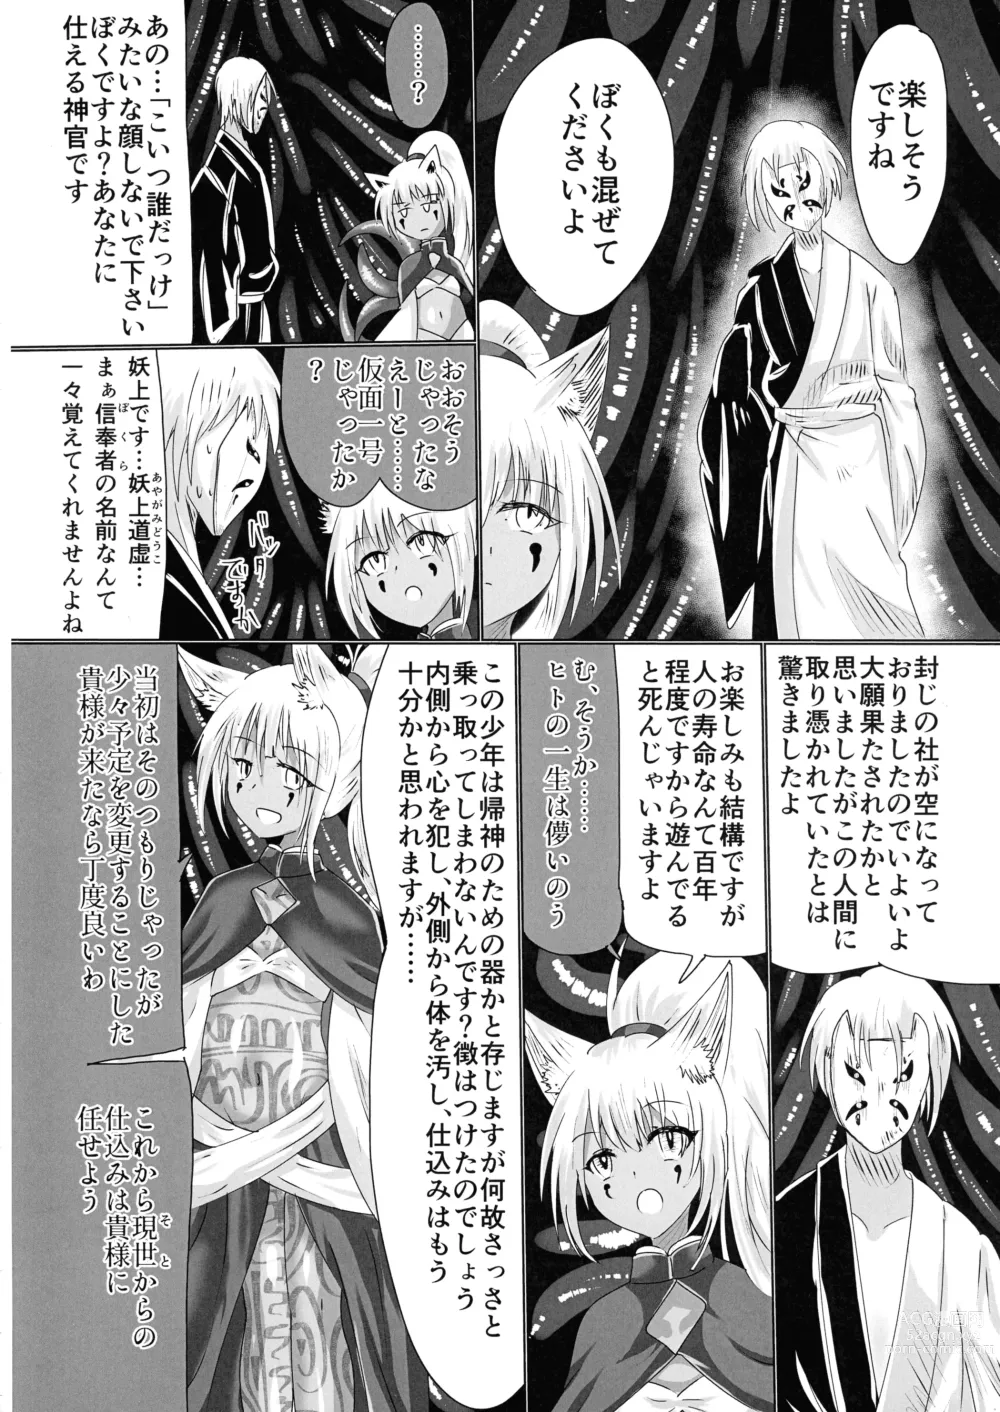 Page 59 of doujinshi Hako Tenjin